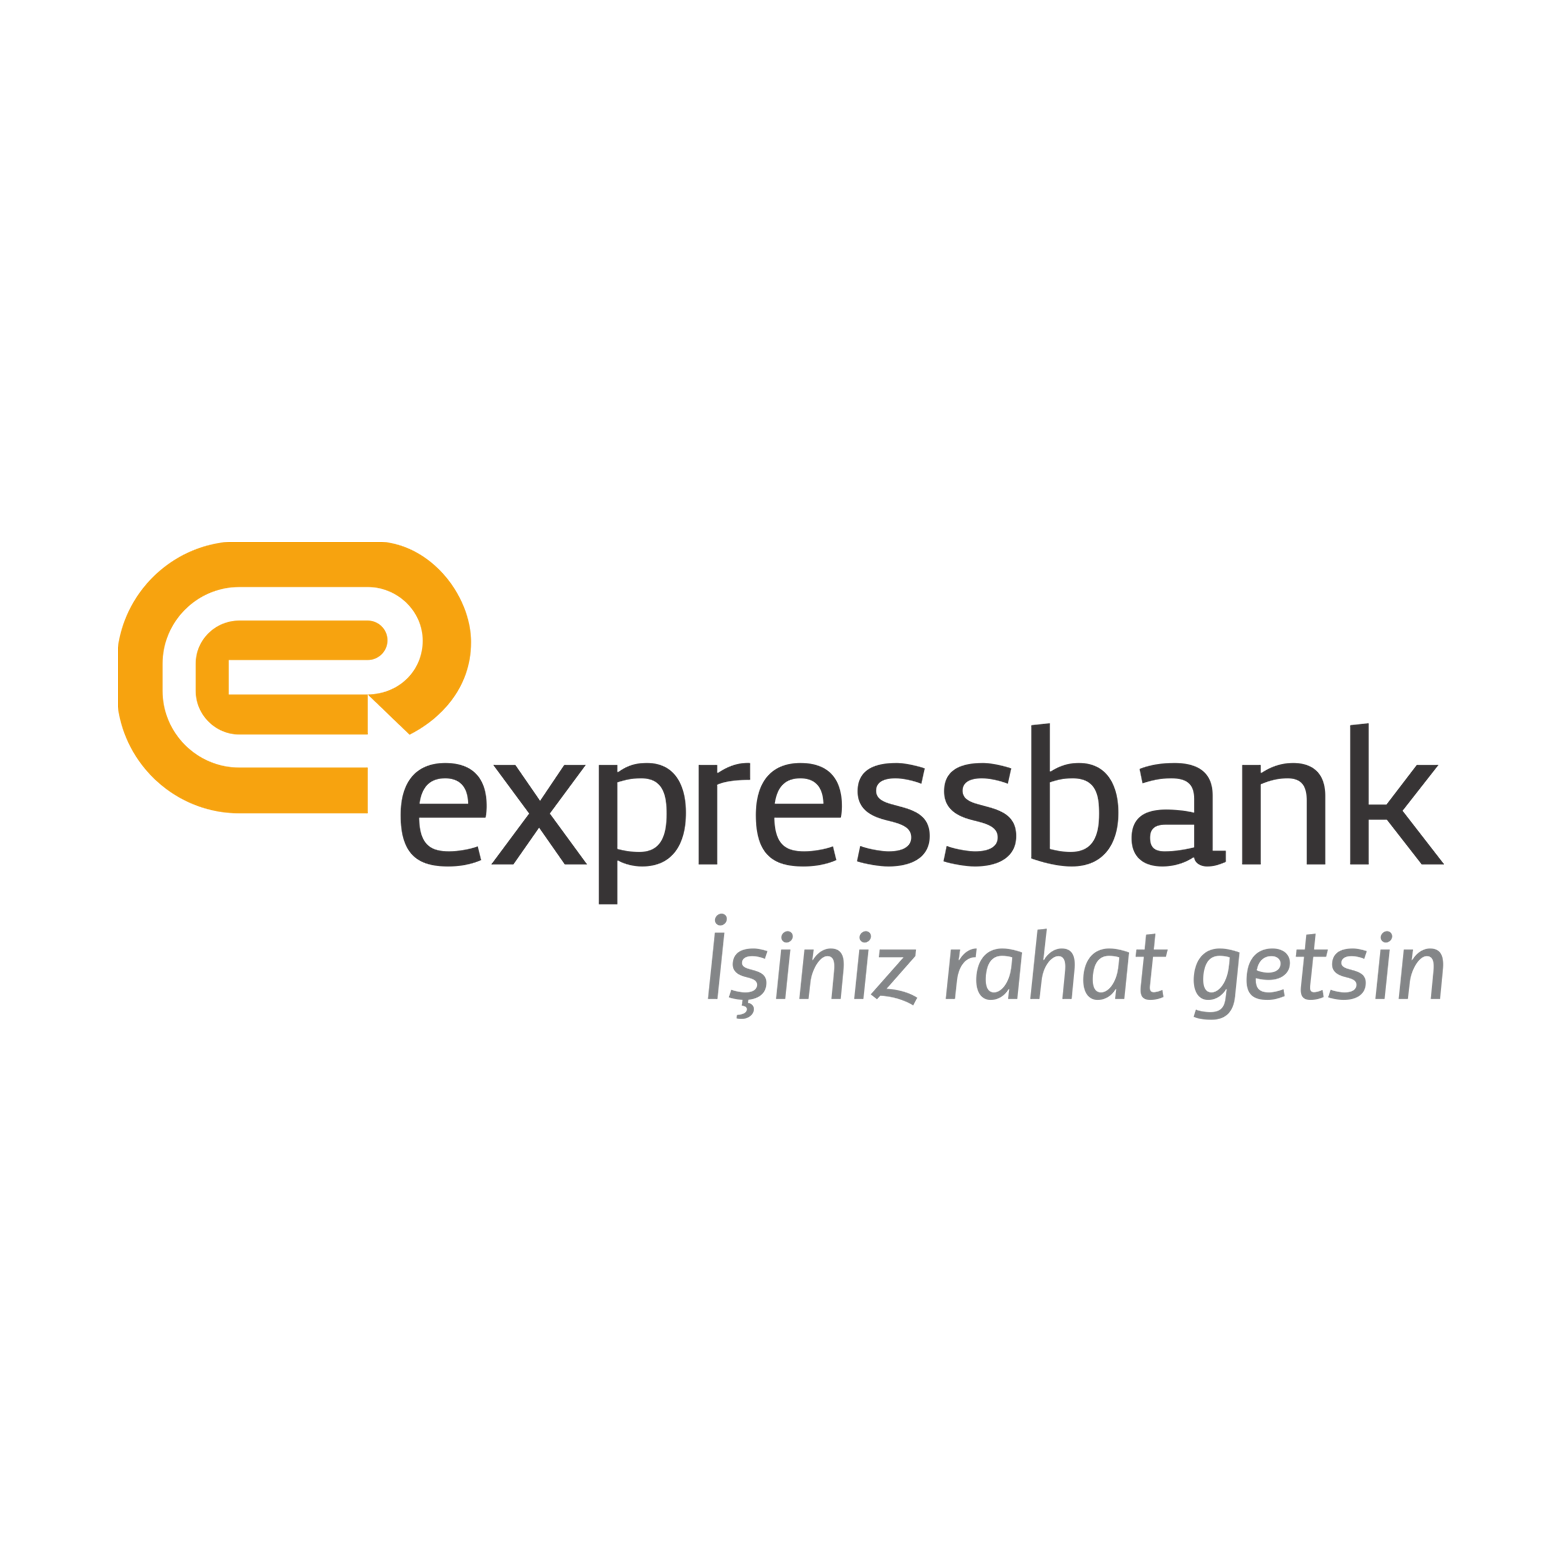 Expressbank завершил первый квартал 2019 года c прибылью